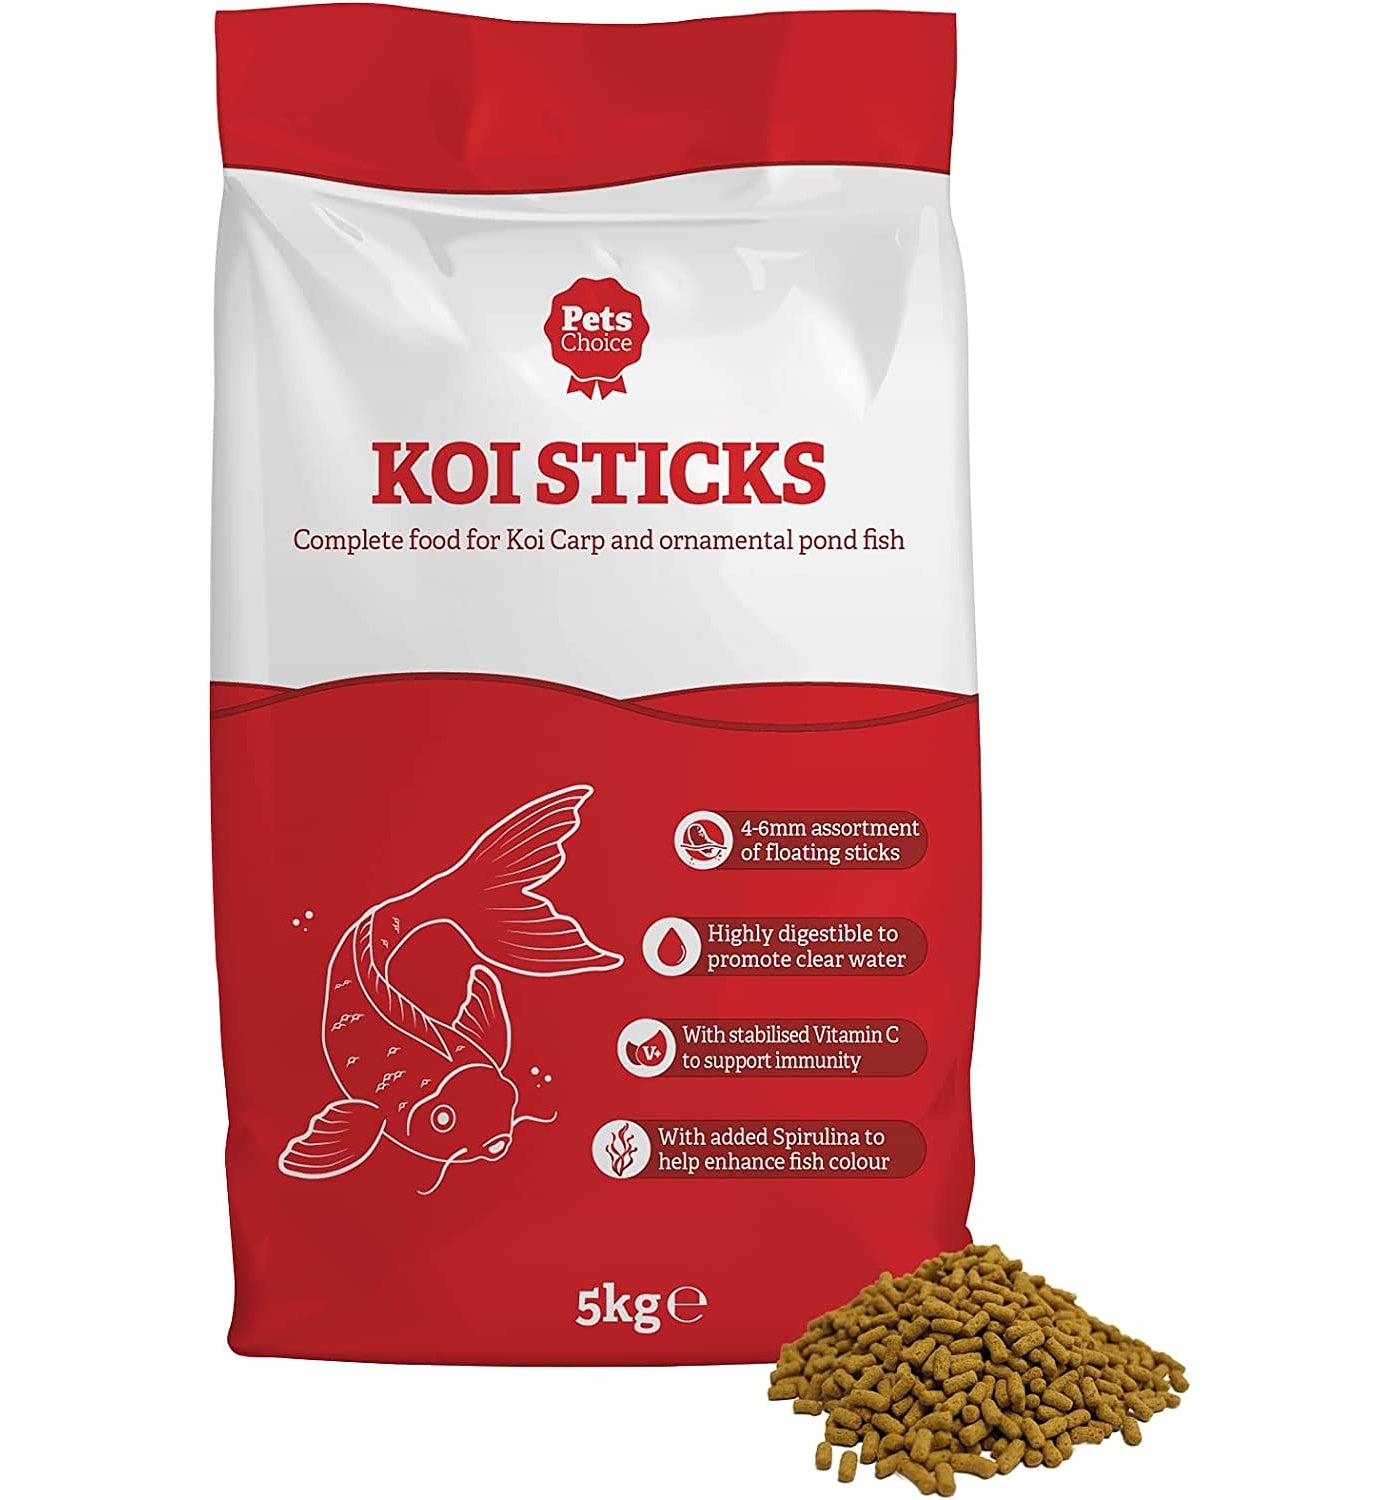 Pets Choice - Koi Sticks - 5kg